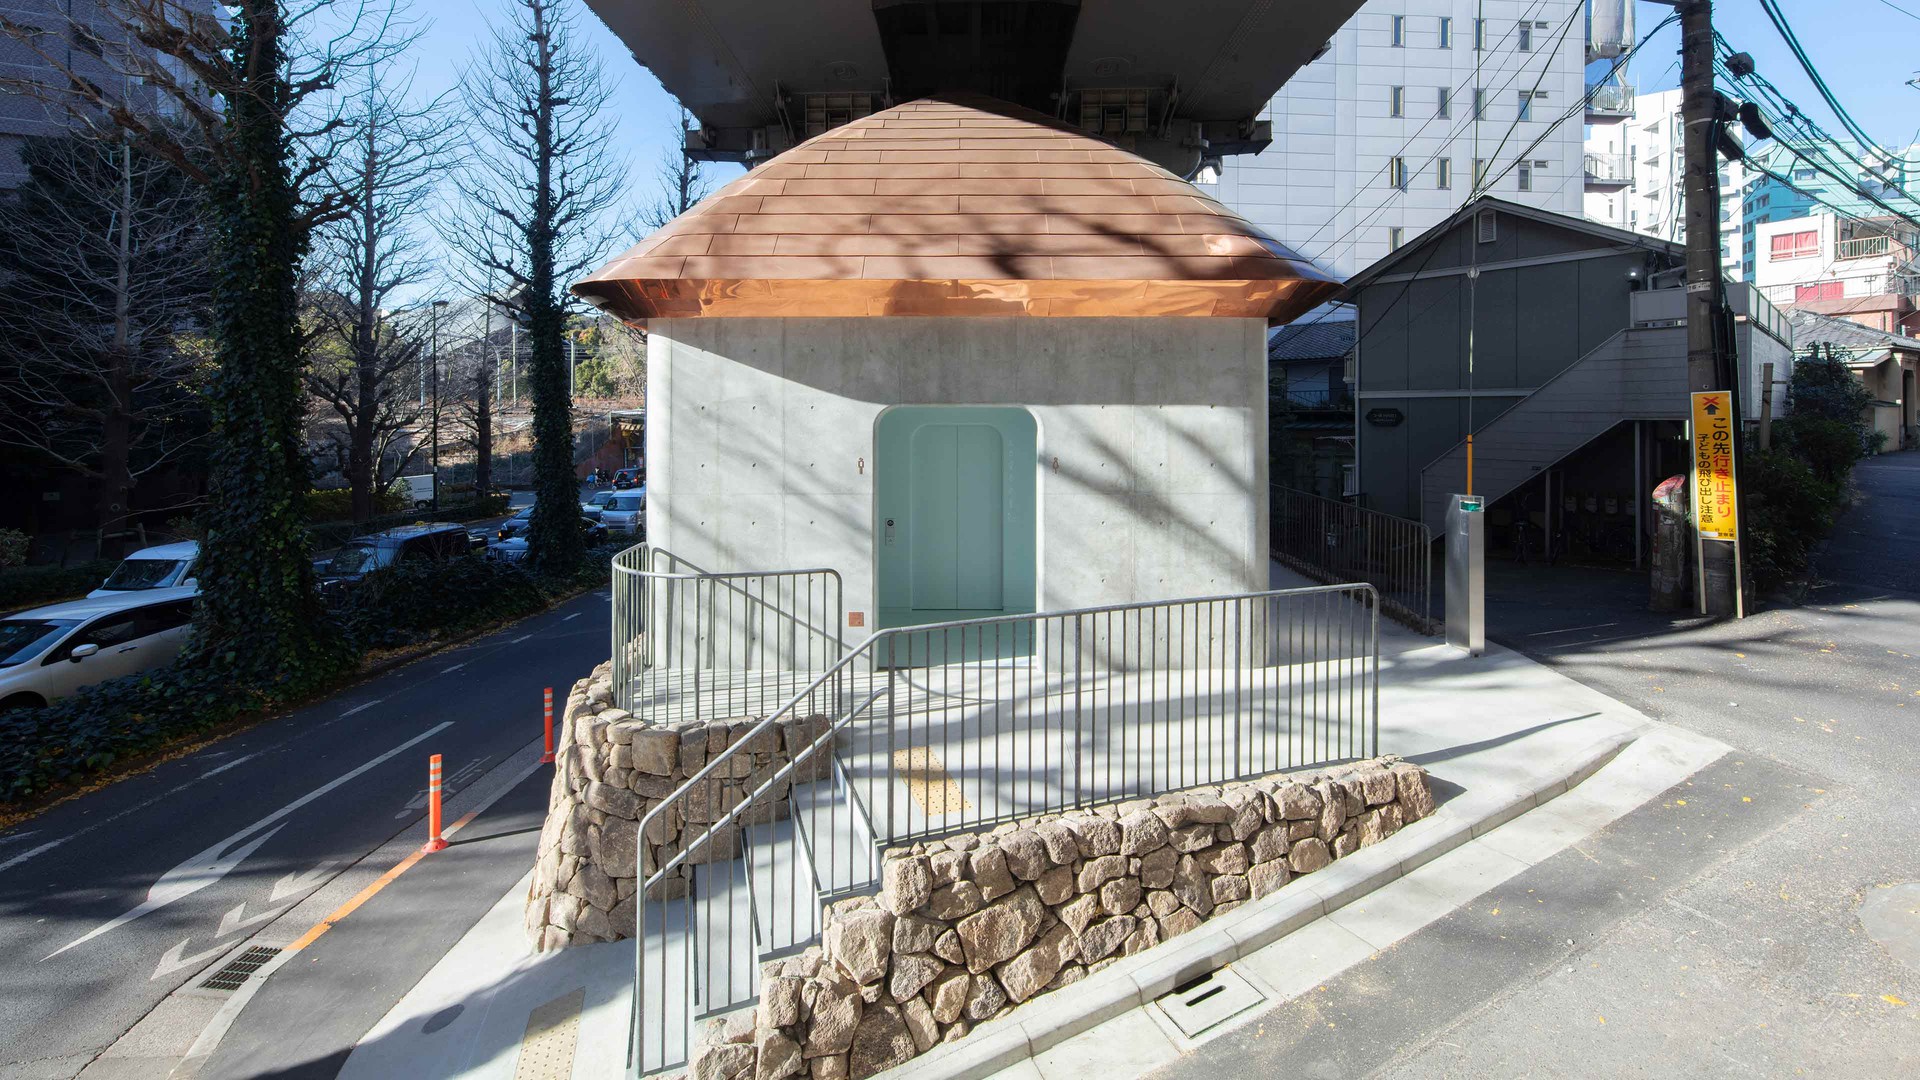 Urasando Public Toilet, THE TOKYO TOILET